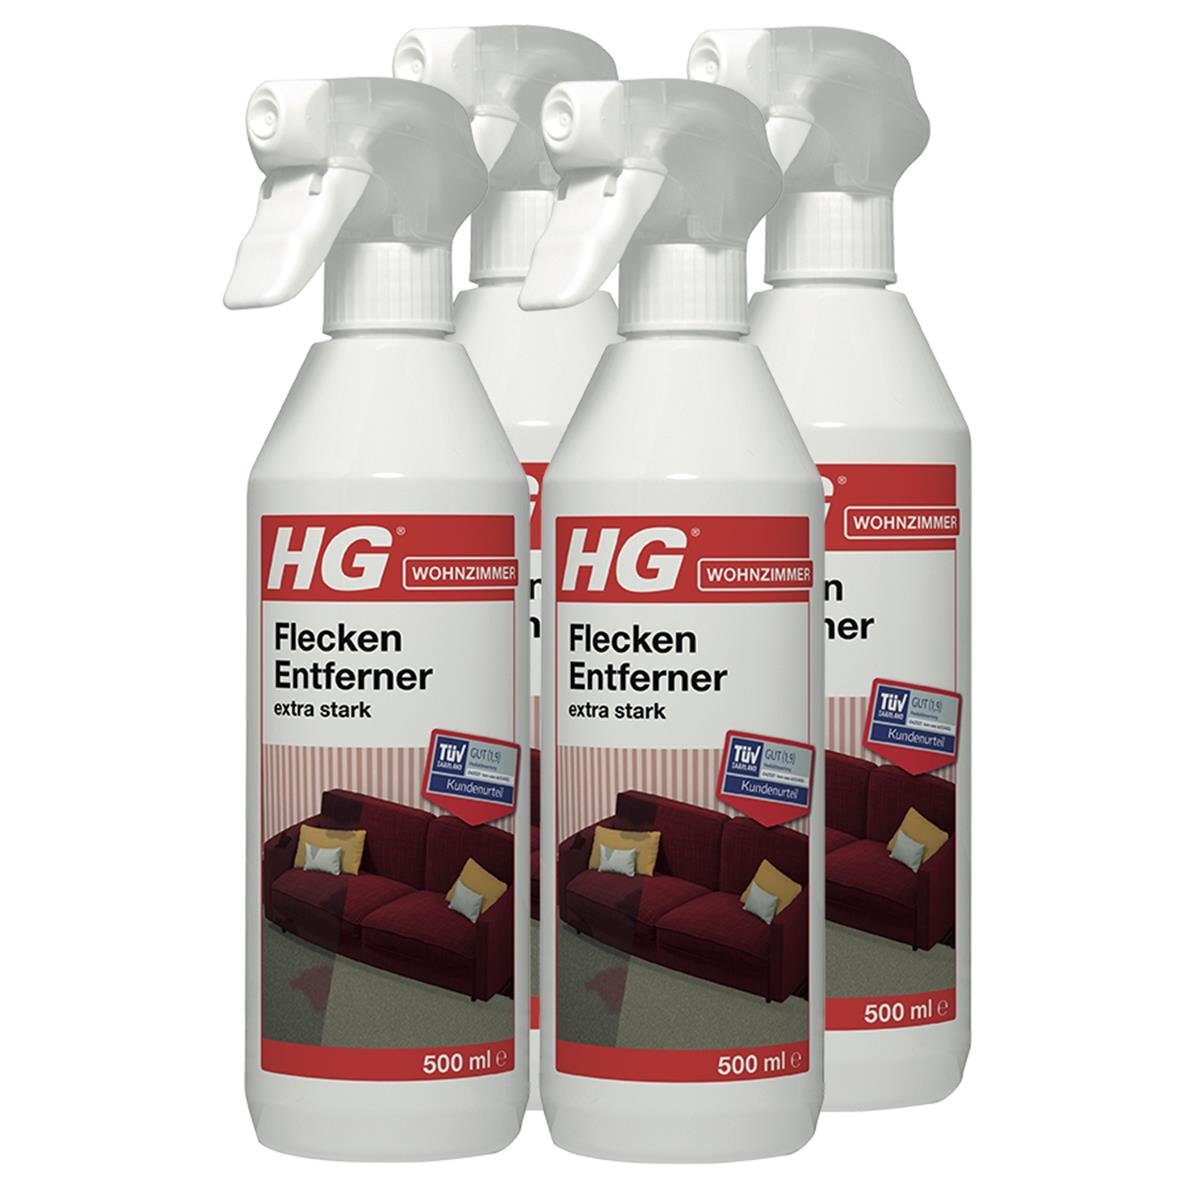 HG HG Flecken Entferner extra alle 500ml - Fleckentferner fast Für stark Textilien (4er